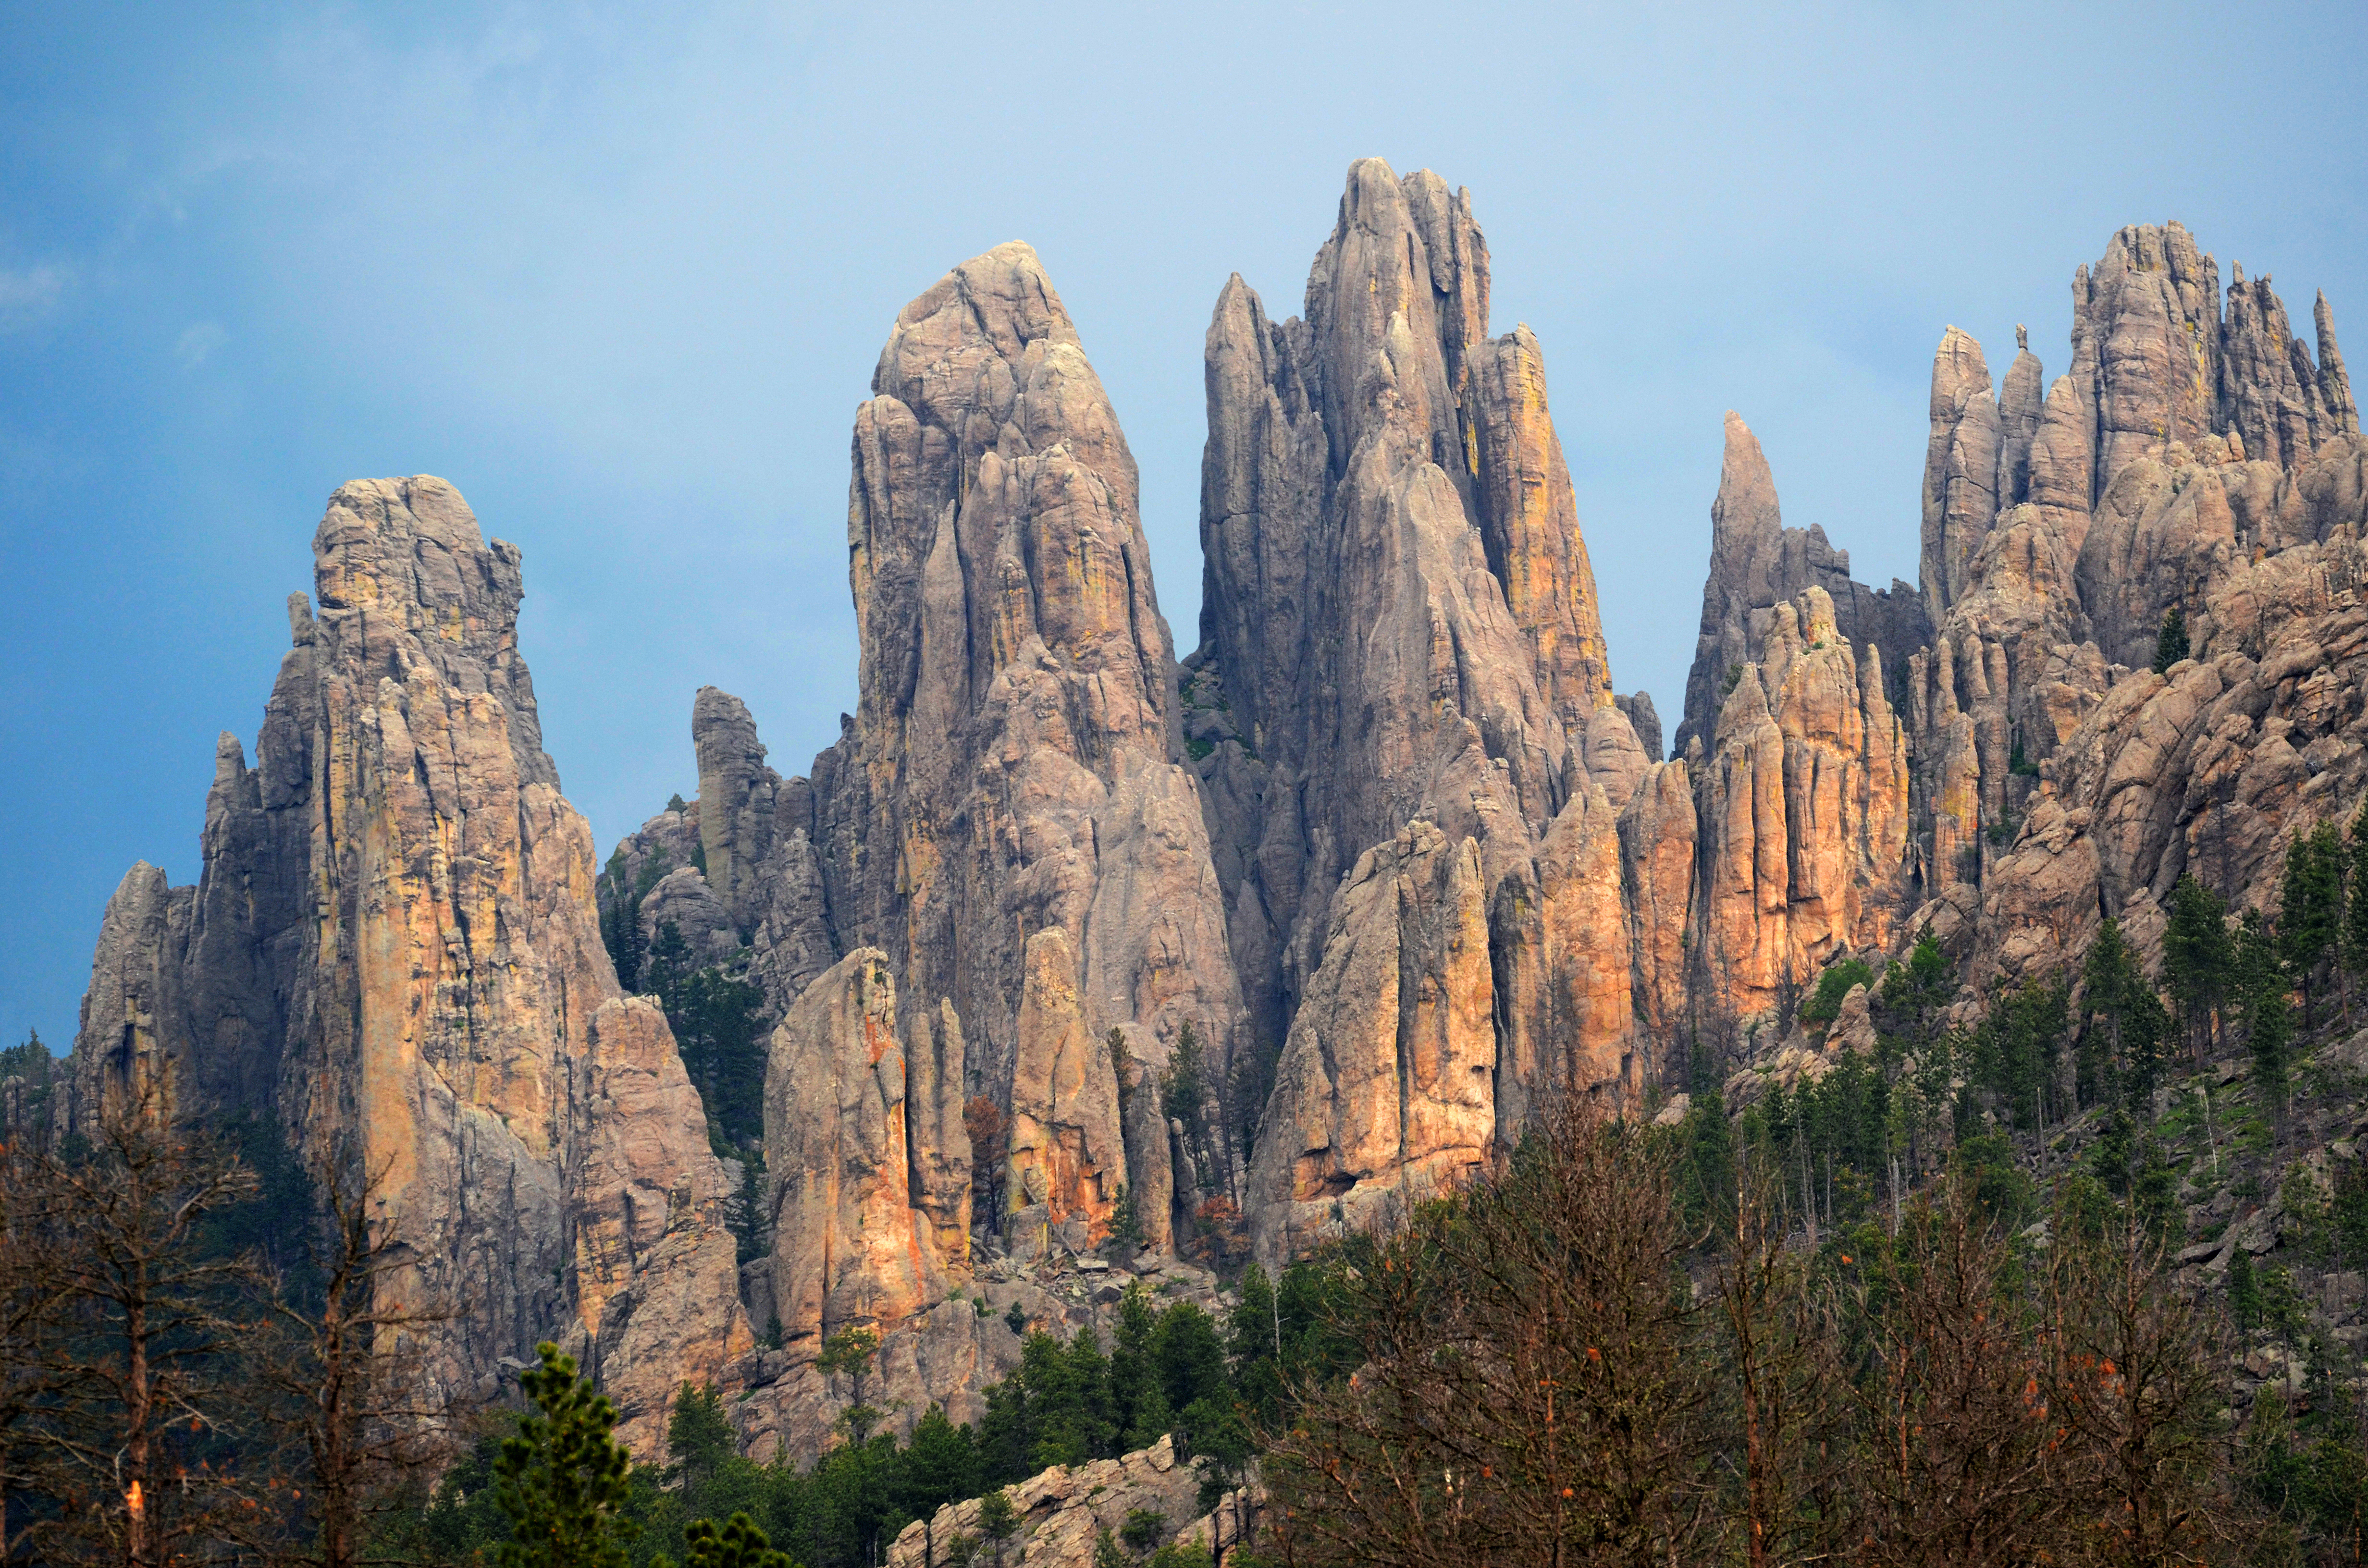 Mountain spires